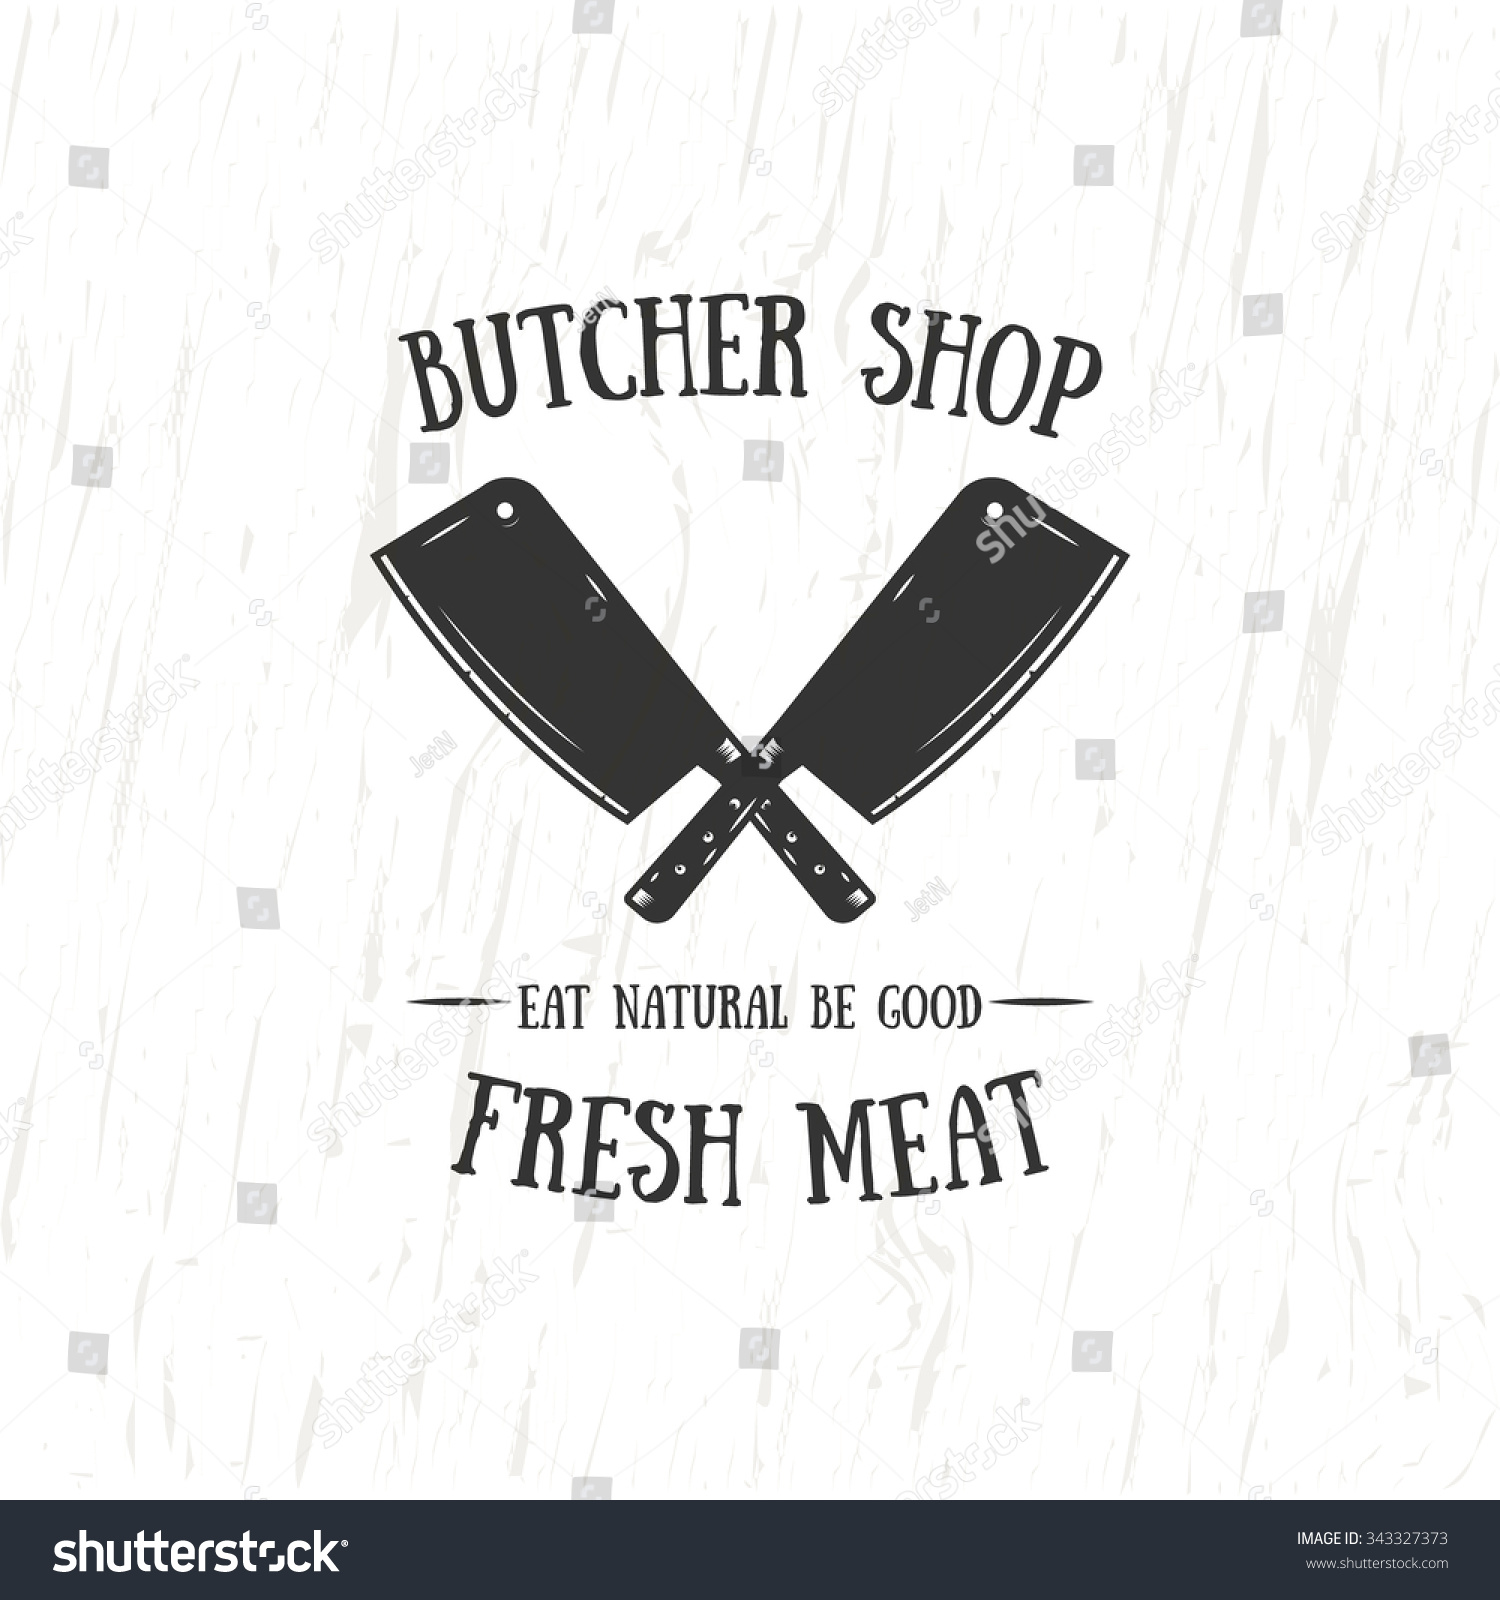 clipart butcher shop - photo #47